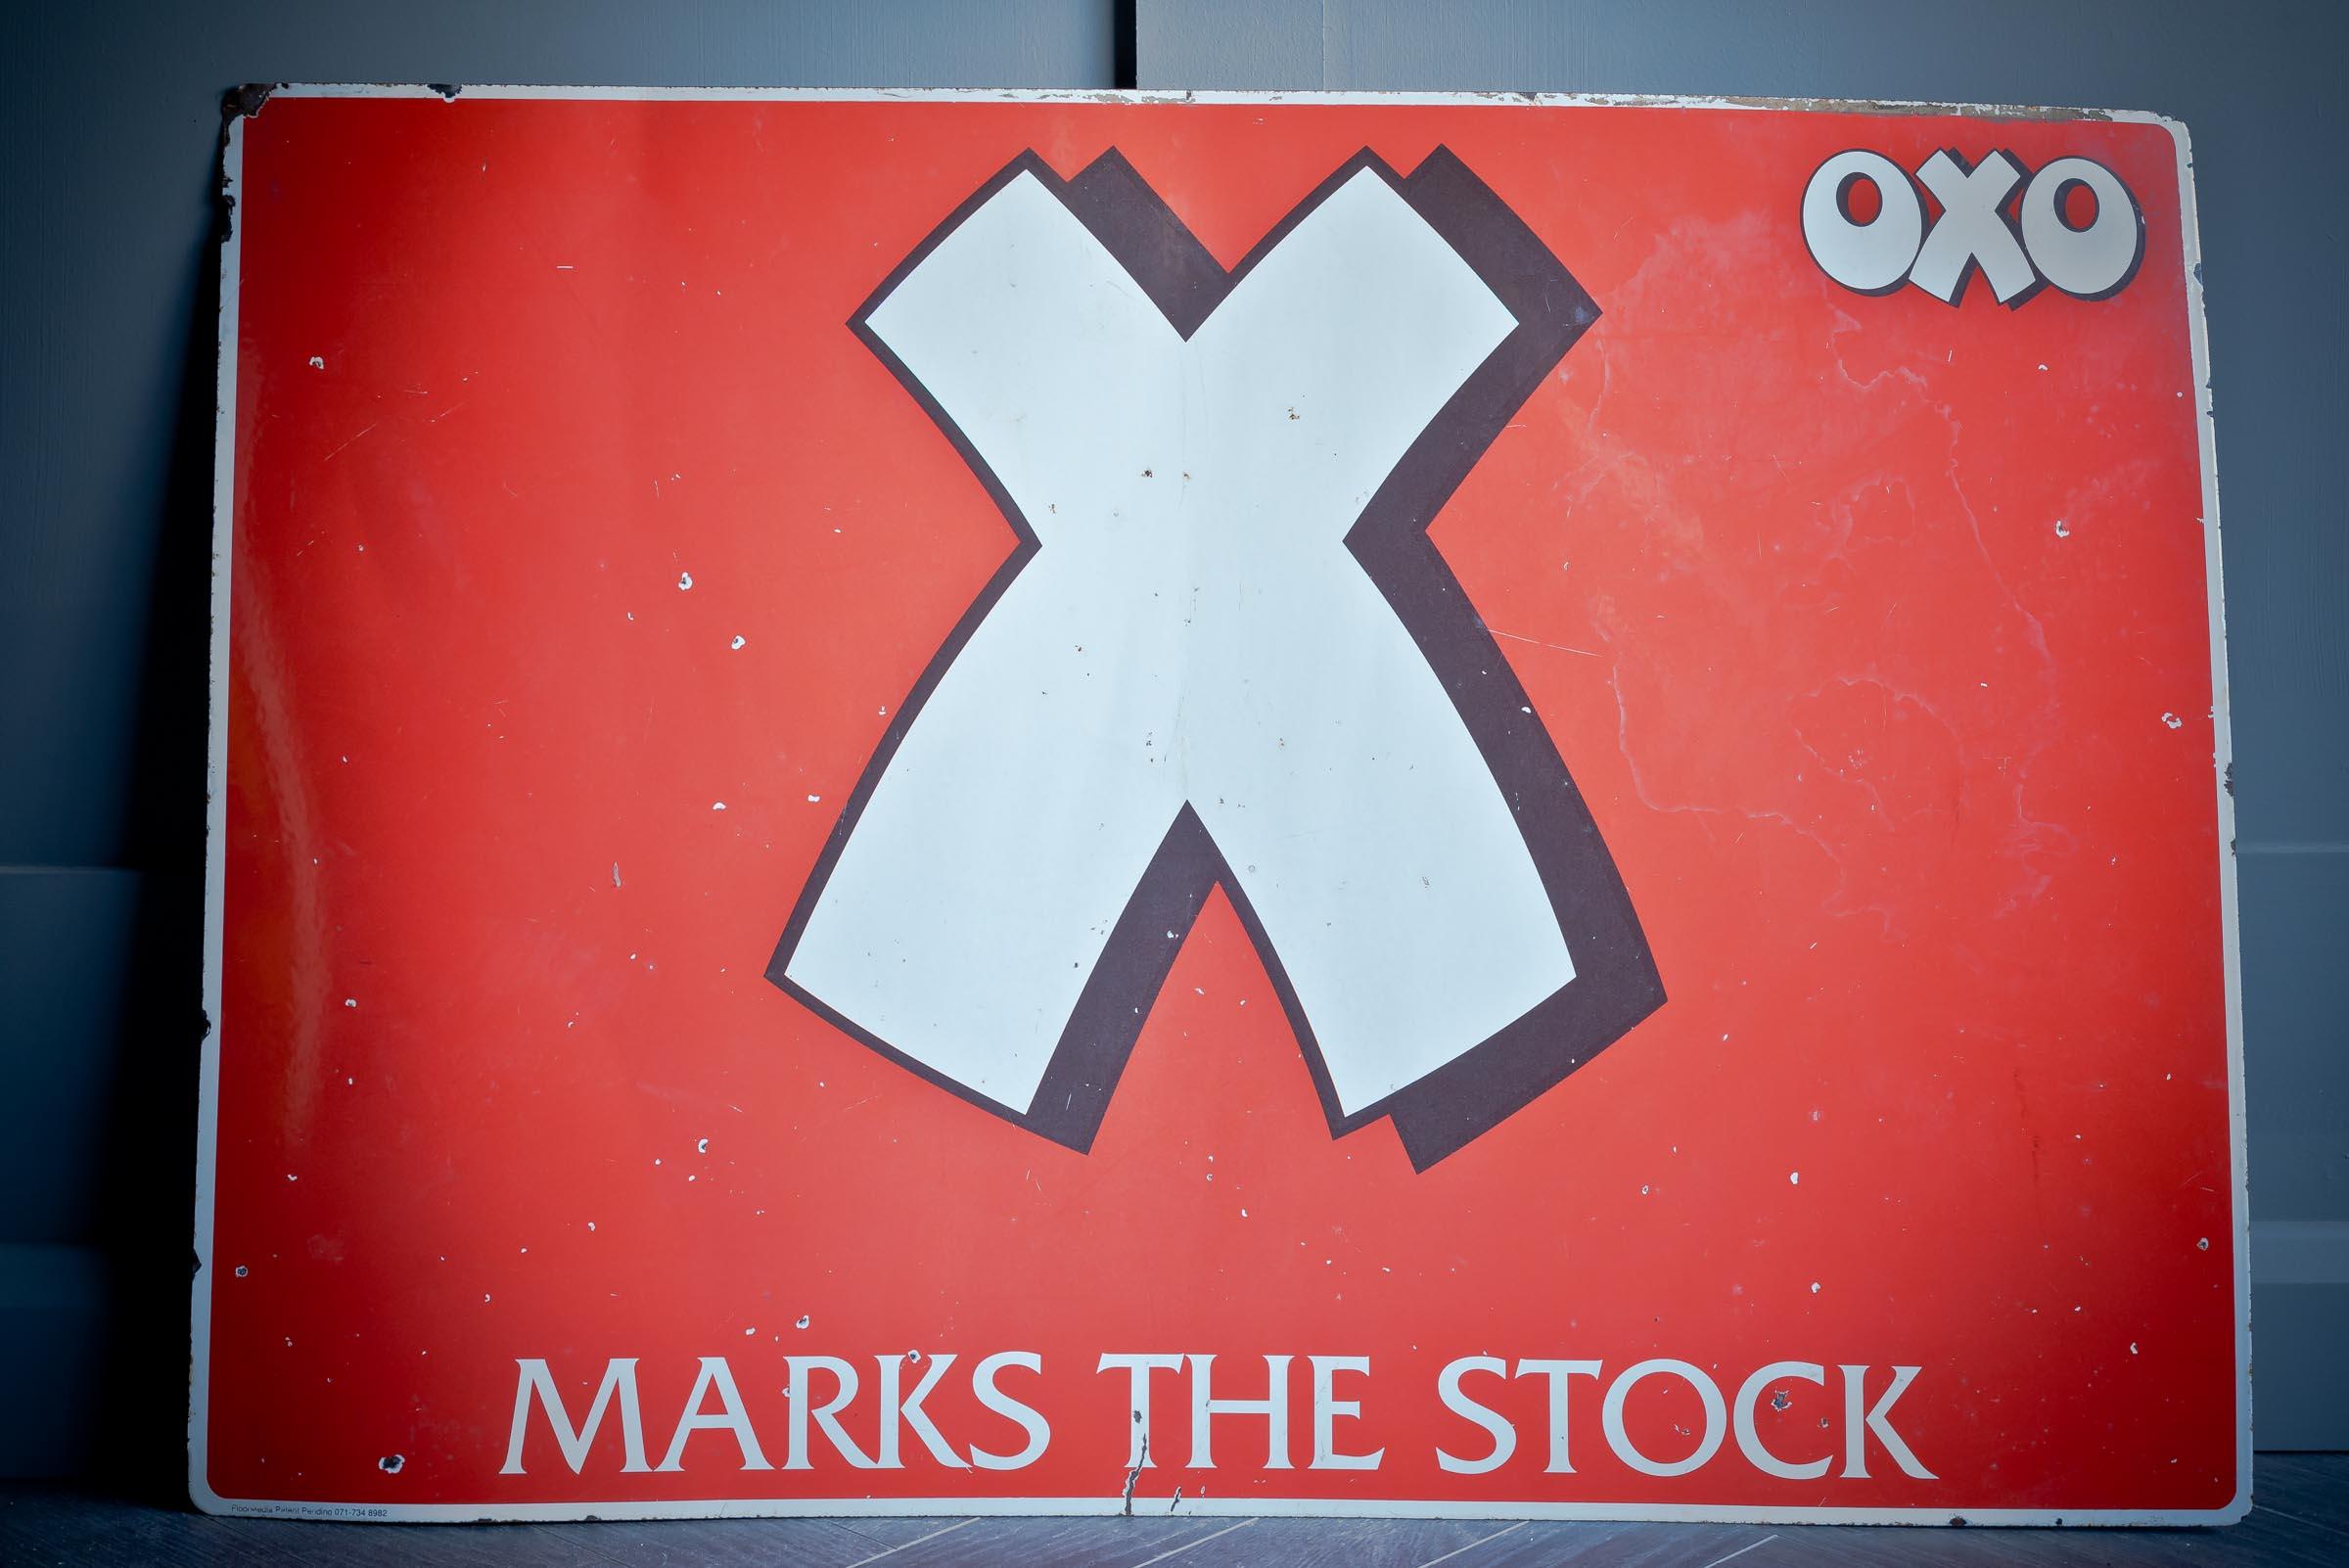 Erstaunliches Oxo-Werbeschild. Leuchtend roter Hintergrund mit einem weißen X und dem raffinierten Wortspiel 